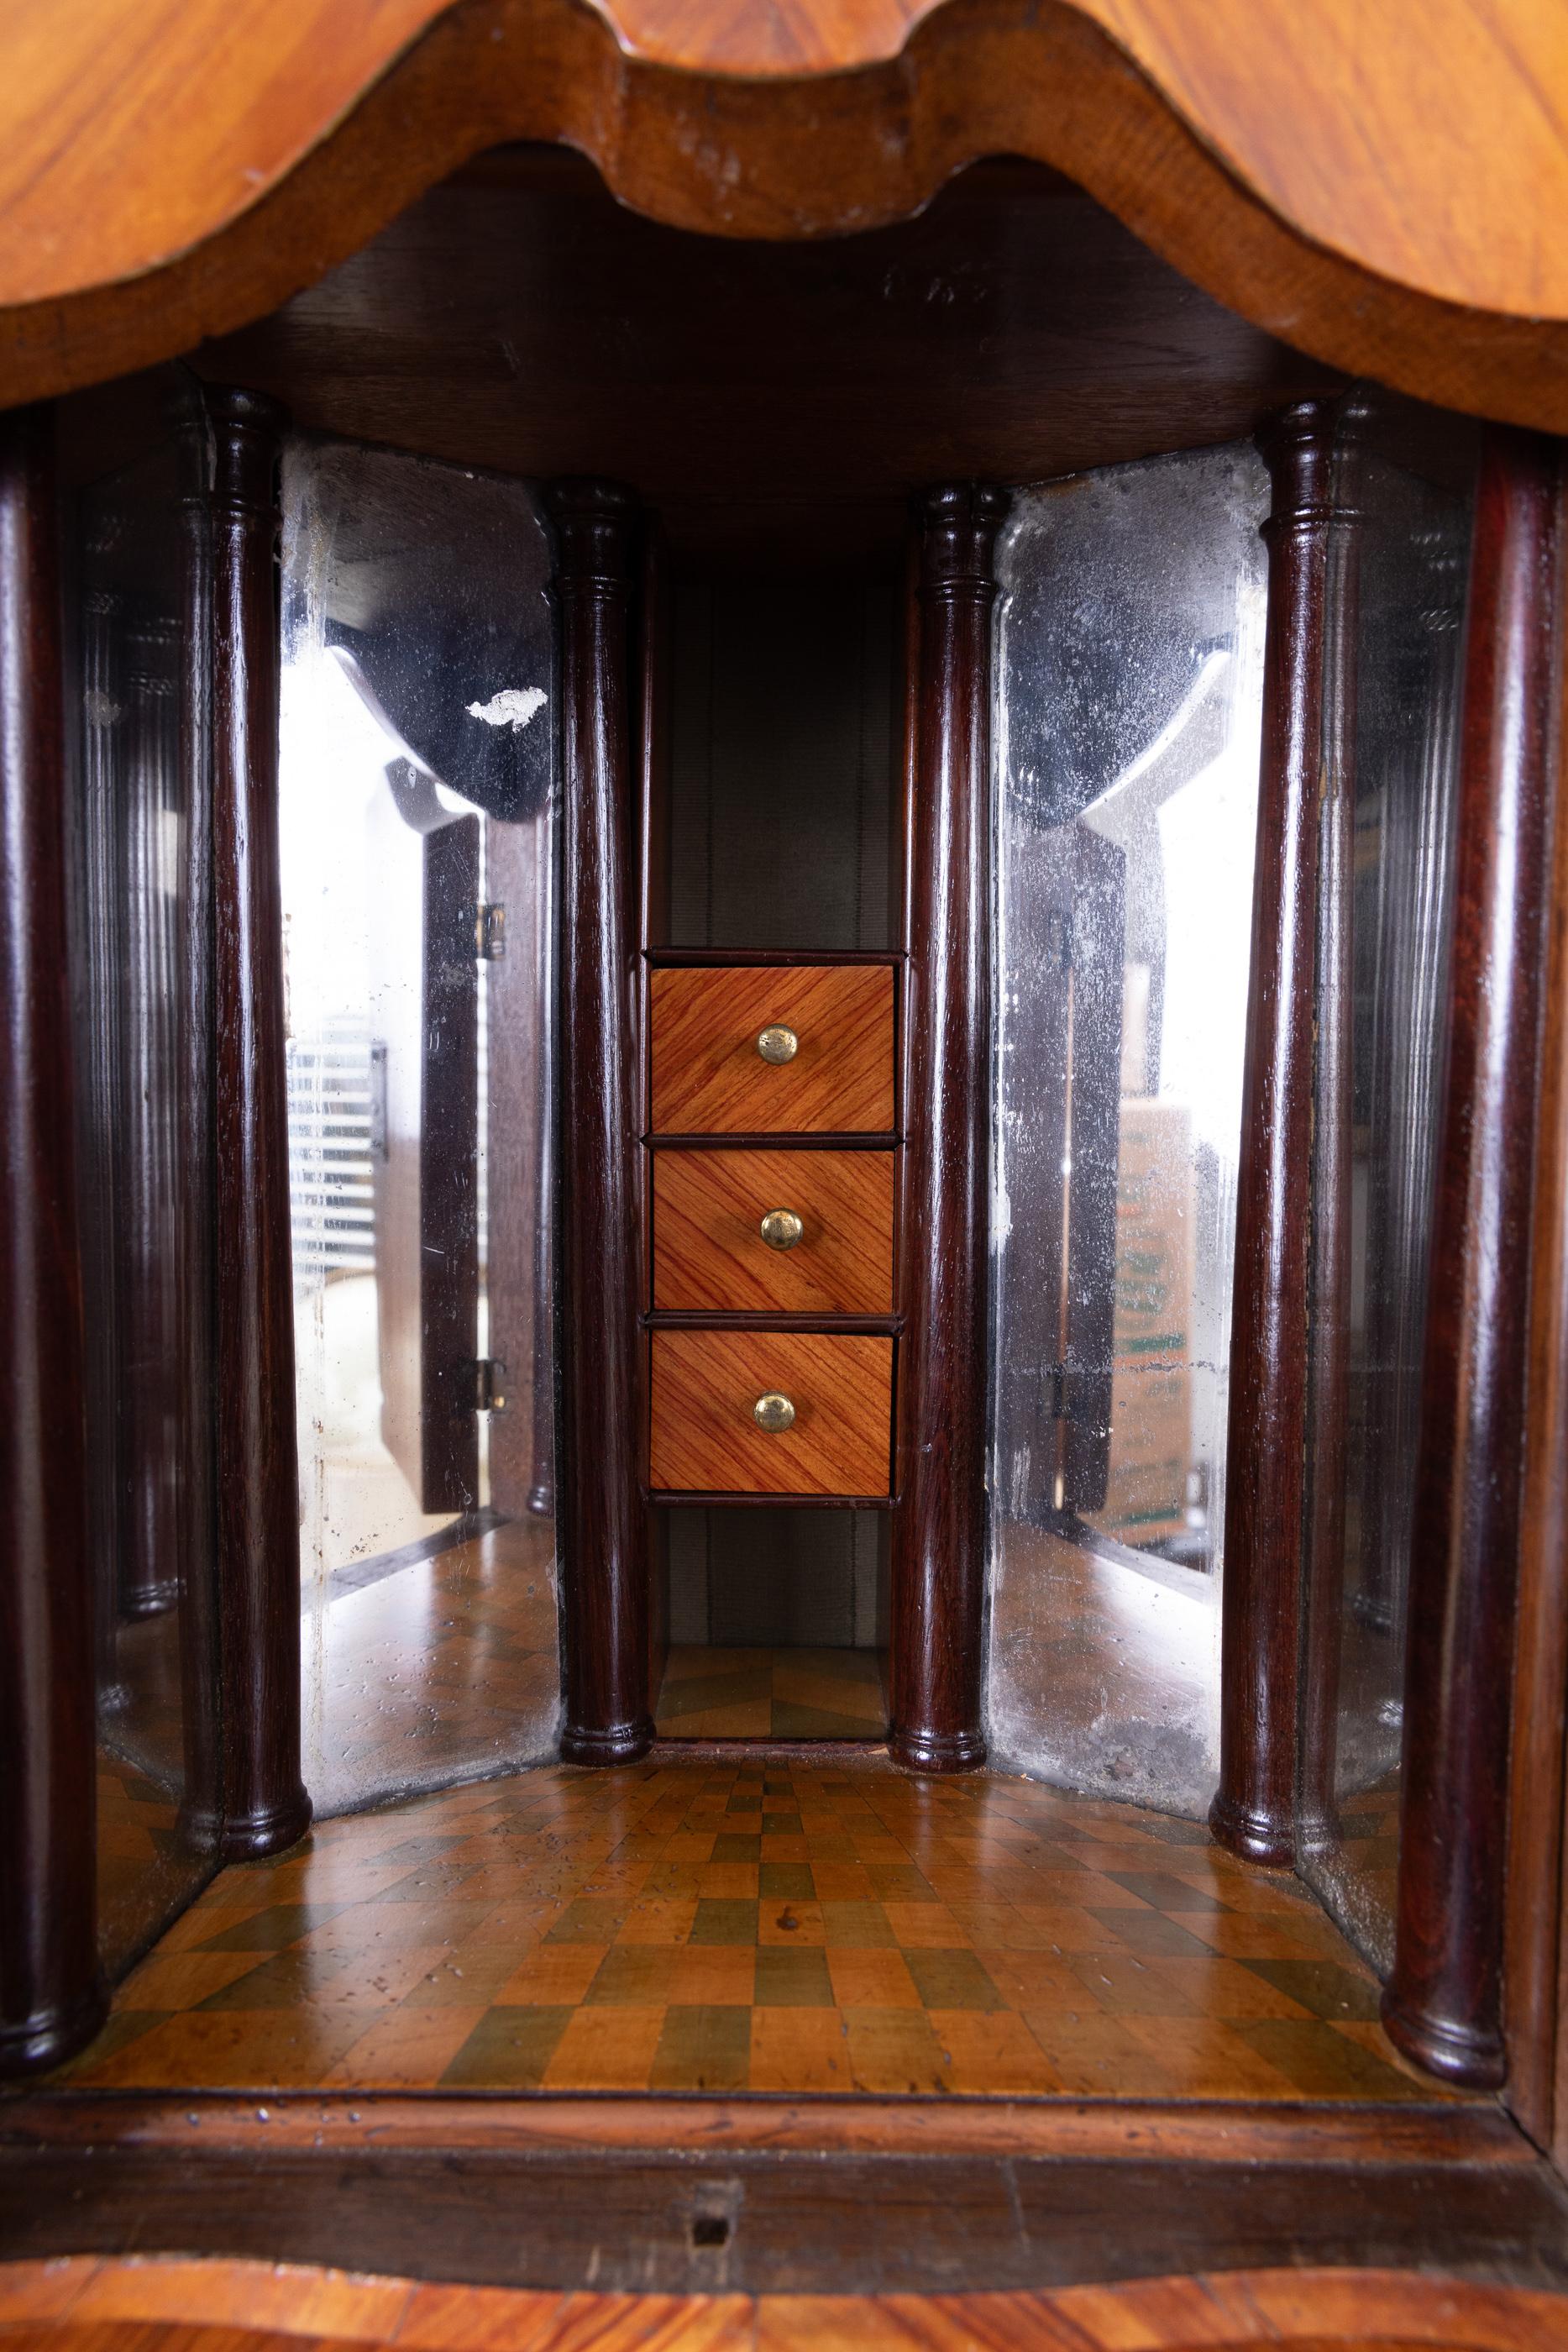 Secrétaire Louis XV Bombe du XVIIIe siècle, lourdement plaqué, avec portes vitrées en haut, et porte secrète avec plancher en damier dans un petit compartiment, avec des murs en miroir pour donner l'illusion d'être plus grand et plus profond. Le